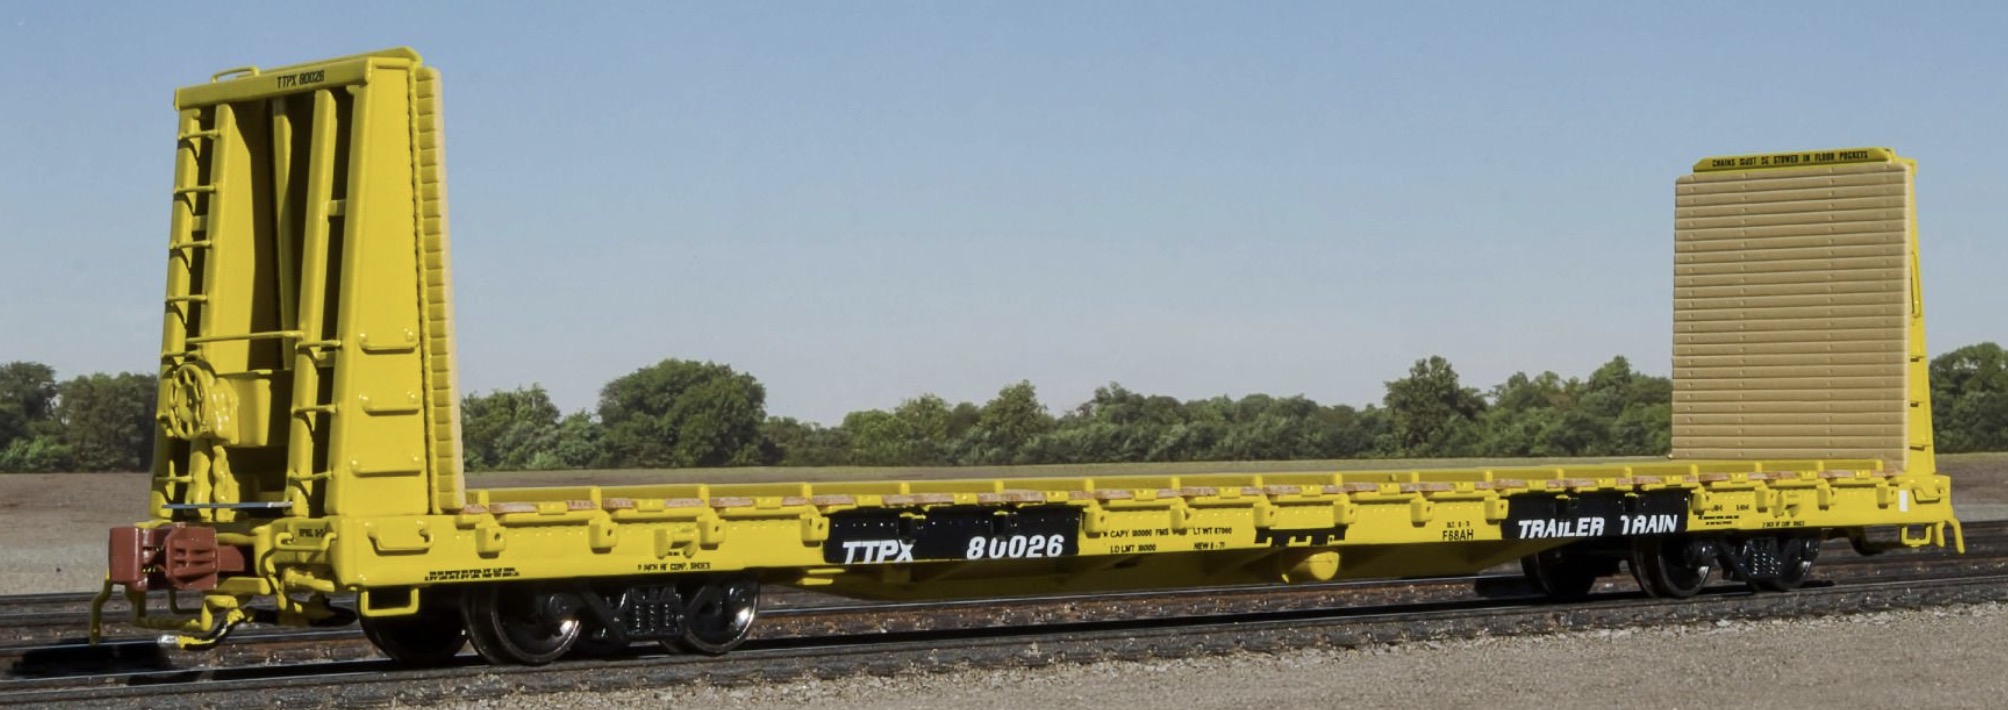 N Scale - ScaleTrains - SXT38971 - Flatcar, Bulkhead, BSC, 68-Foot - Trailer Train - 80698